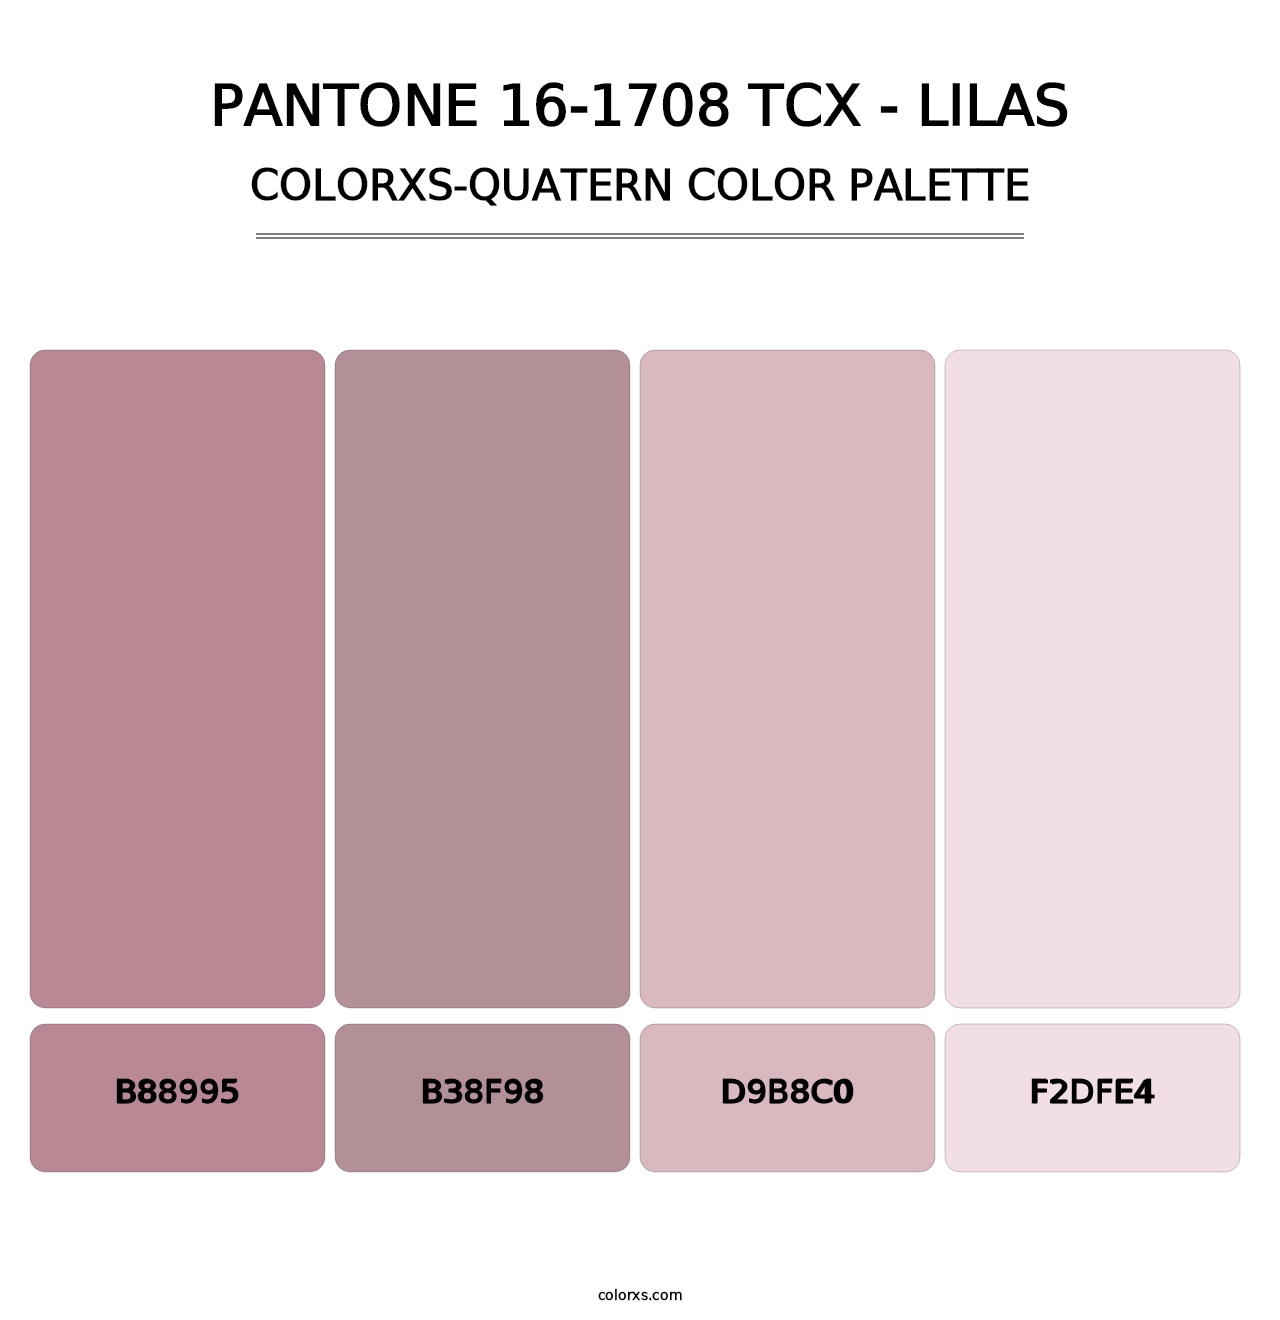 PANTONE 16-1708 TCX - Lilas - Colorxs Quatern Palette